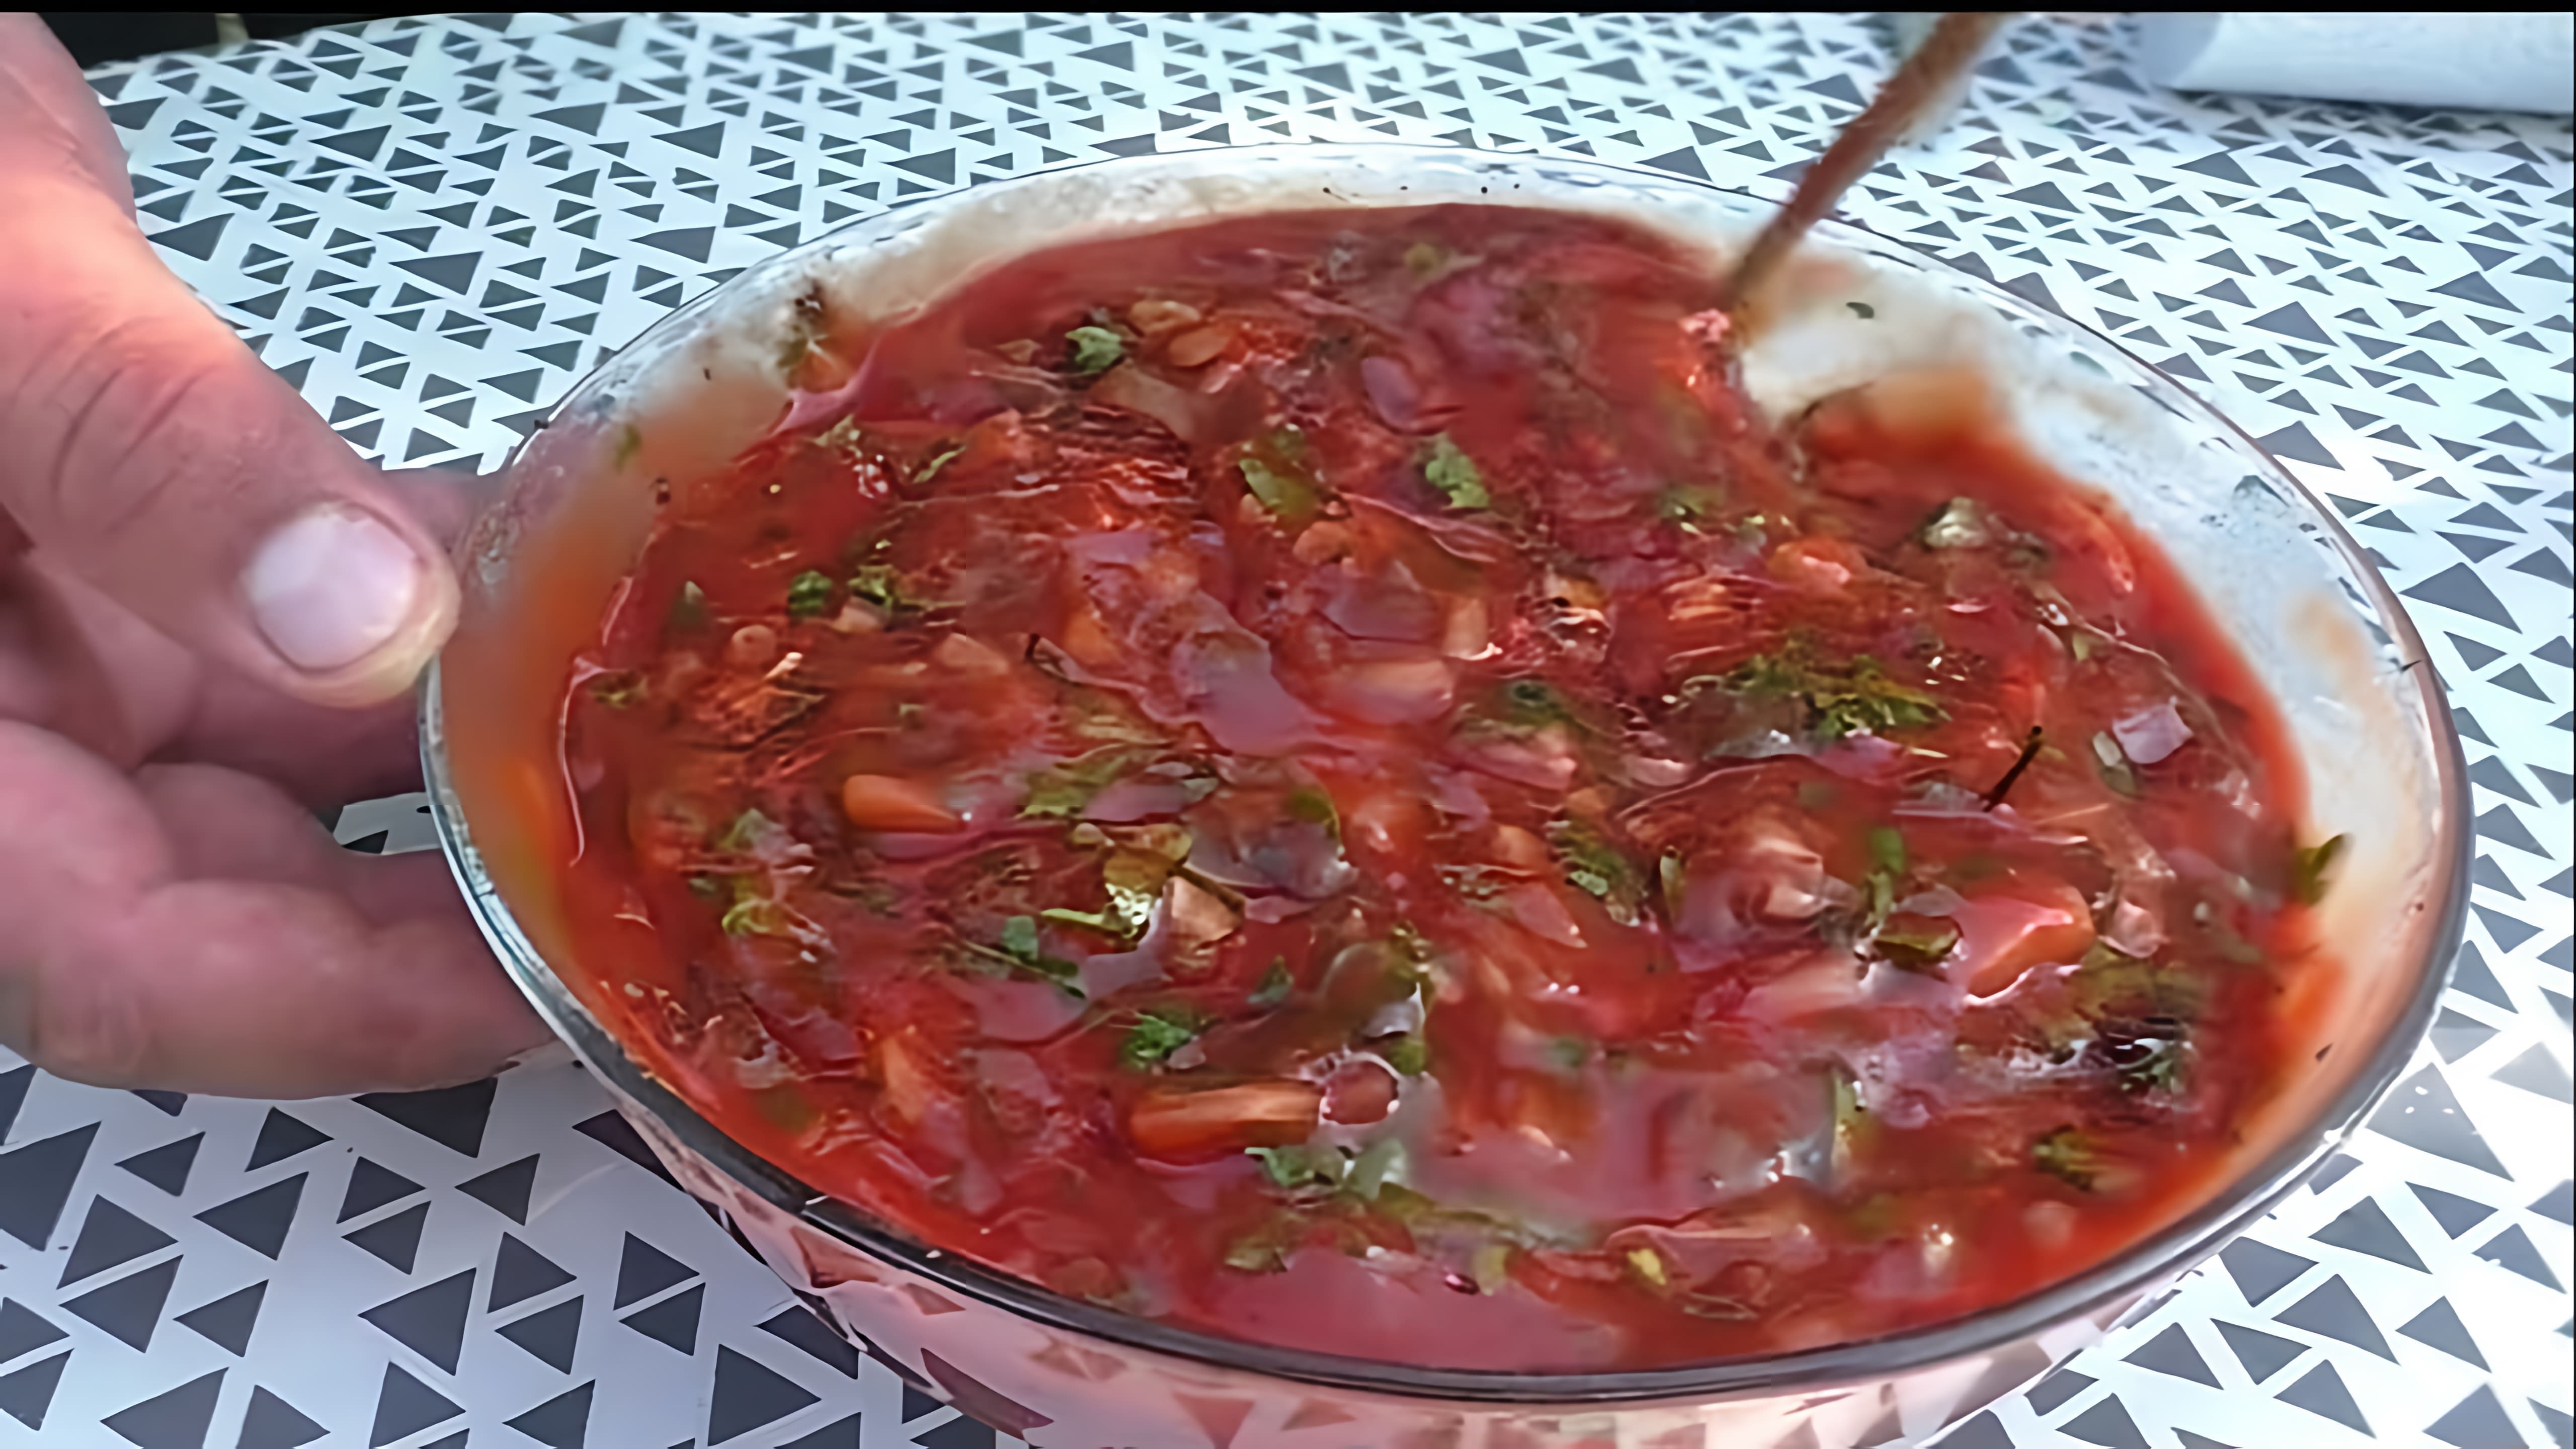 В этом видео демонстрируется процесс приготовления армянского чудо-соуса по многочисленным просьбам зрителей